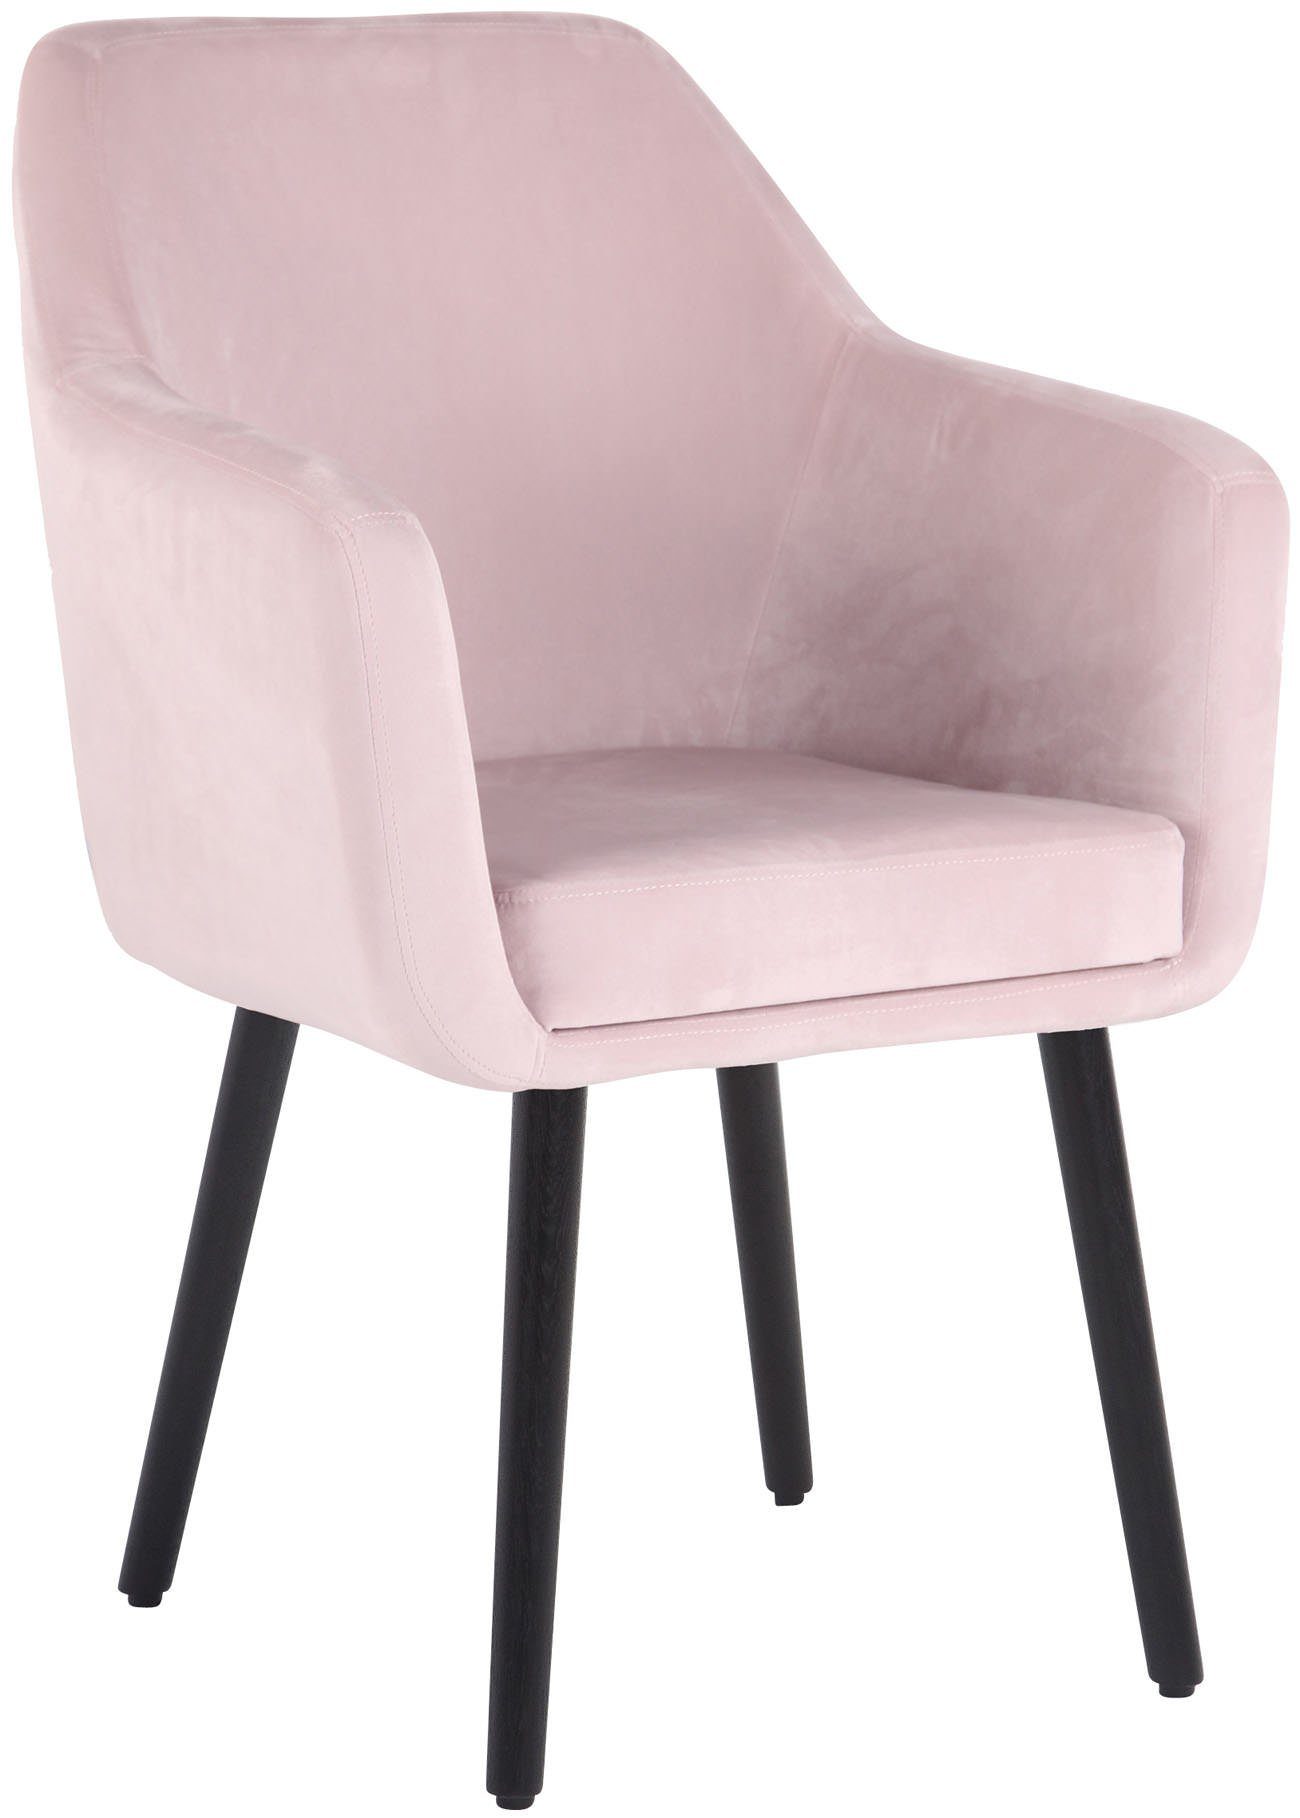 TPFLiving Esszimmerstuhl Utah mit hochwertig gepolsterter Sitzfläche - Konferenzstuhl (Küchenstuhl - Esstischstuhl - Wohnzimmerstuhl - Polsterstuhl), Gestell: Buchenholz schwarz - Sitzfläche: Samt pink